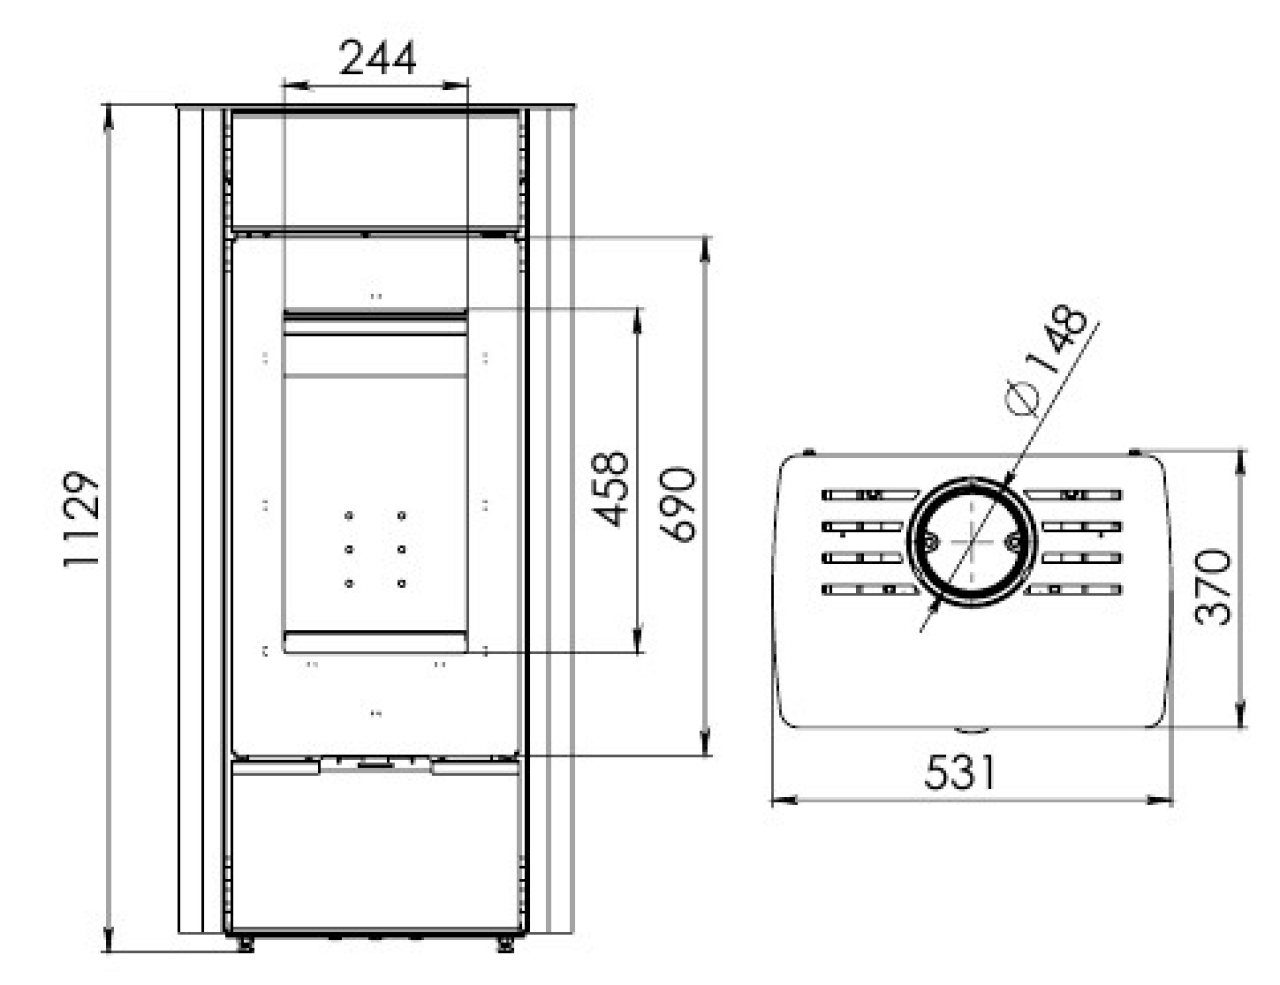 Печь-камин АОТ 7,0-01 в модификации «Нарочь В» - 1